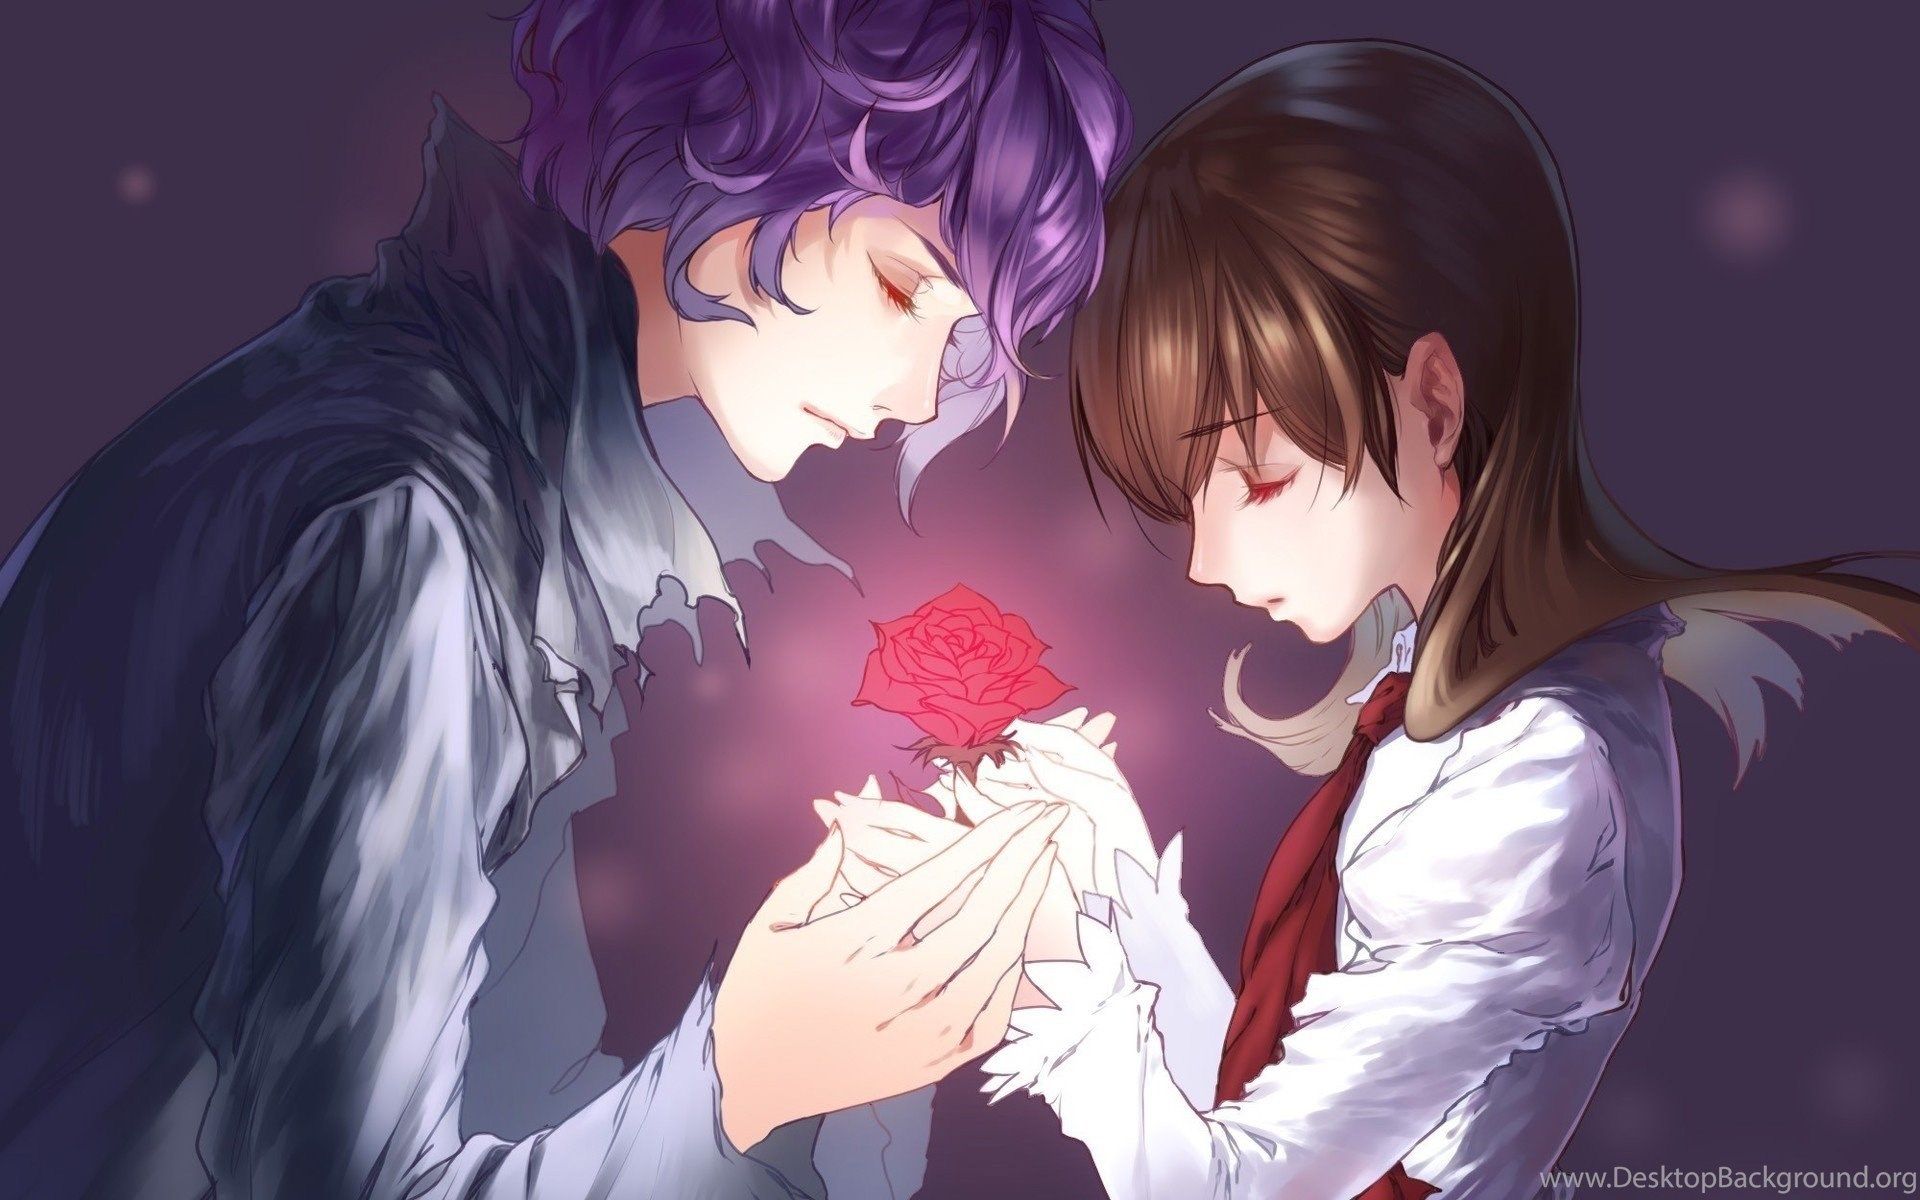 Ib Game, Flower, Anime, Boy, Girl, Love Image Wallpaper Desktop Background